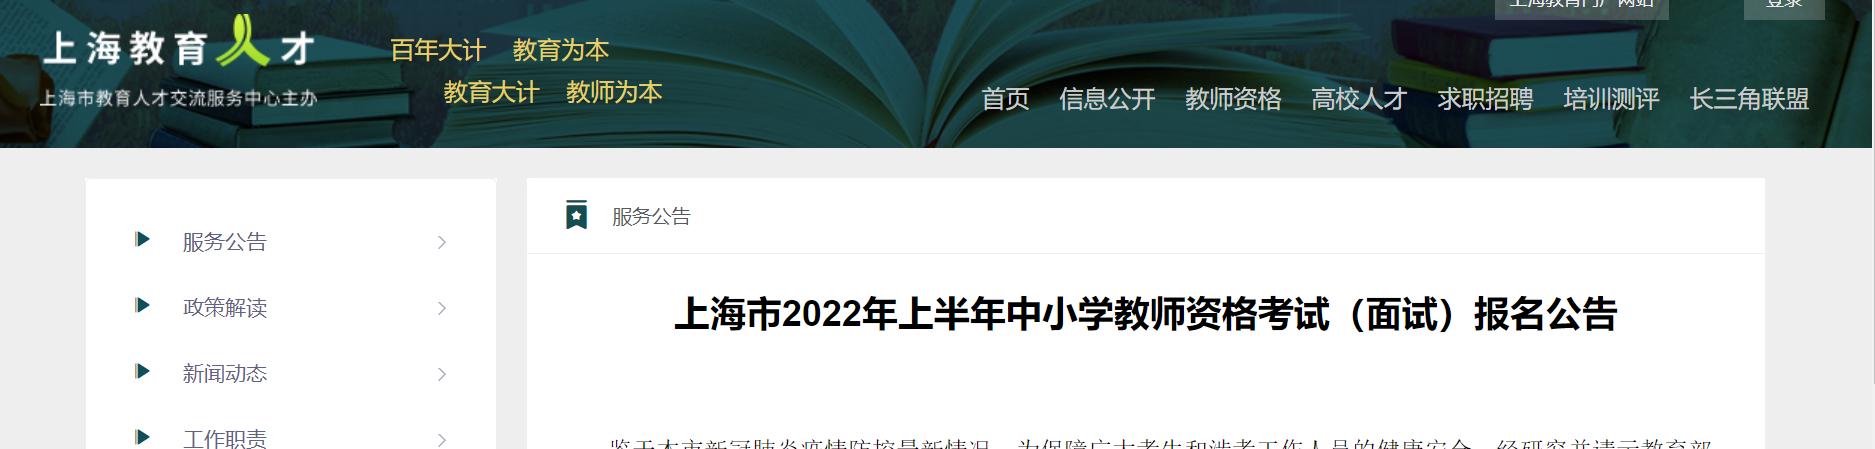 2022年上半年上海中小学教师资格（面试）报名及资格审核公告